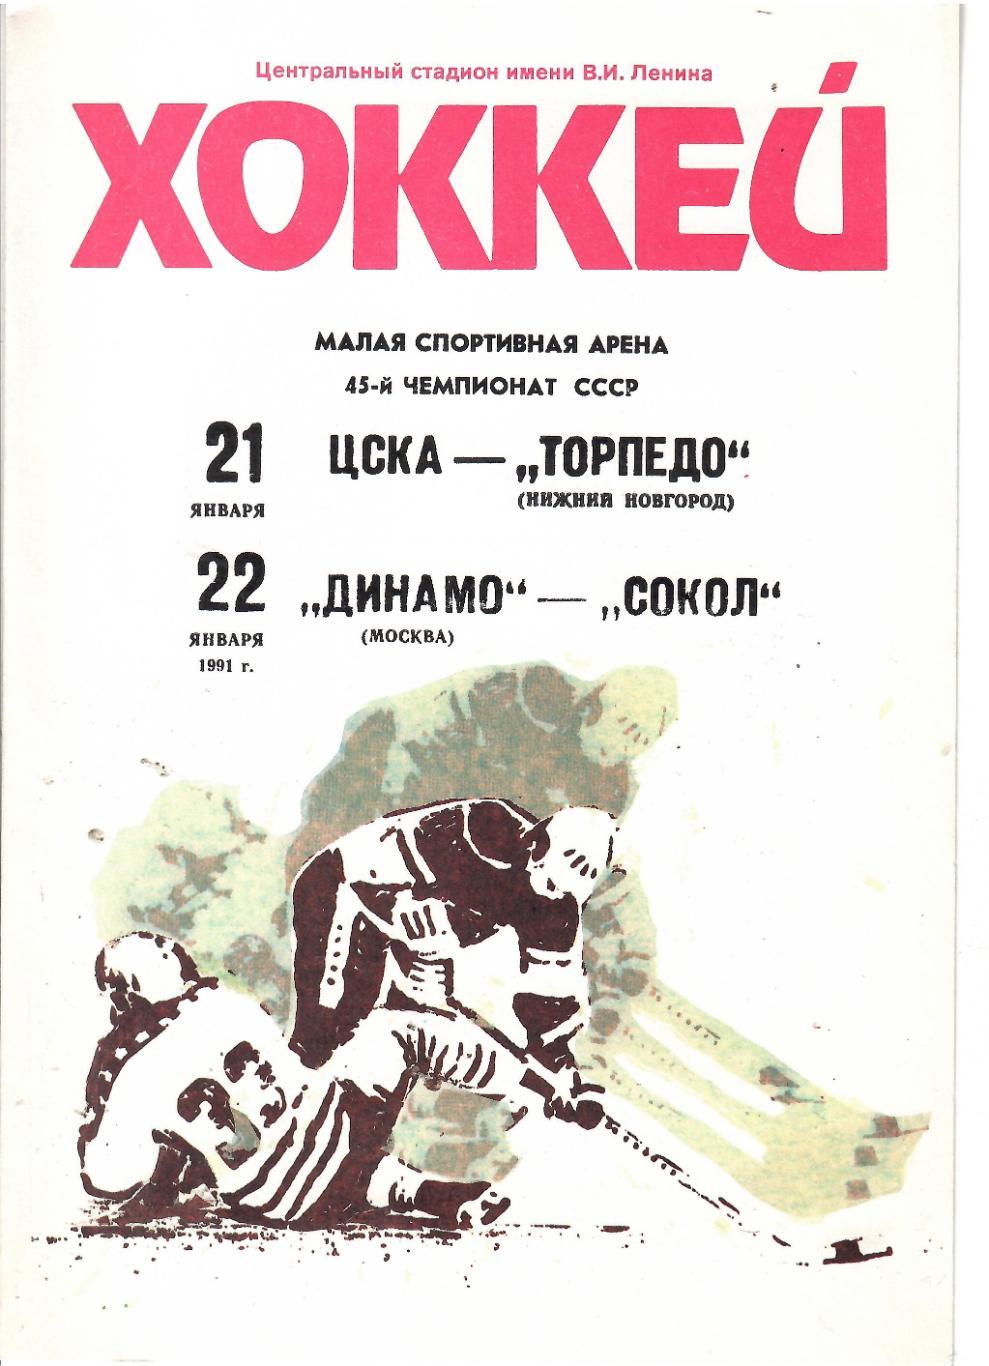 1991 Хоккей ЦСКА - Торпедо Нижний Новгород - Динамо Москва - Сокол